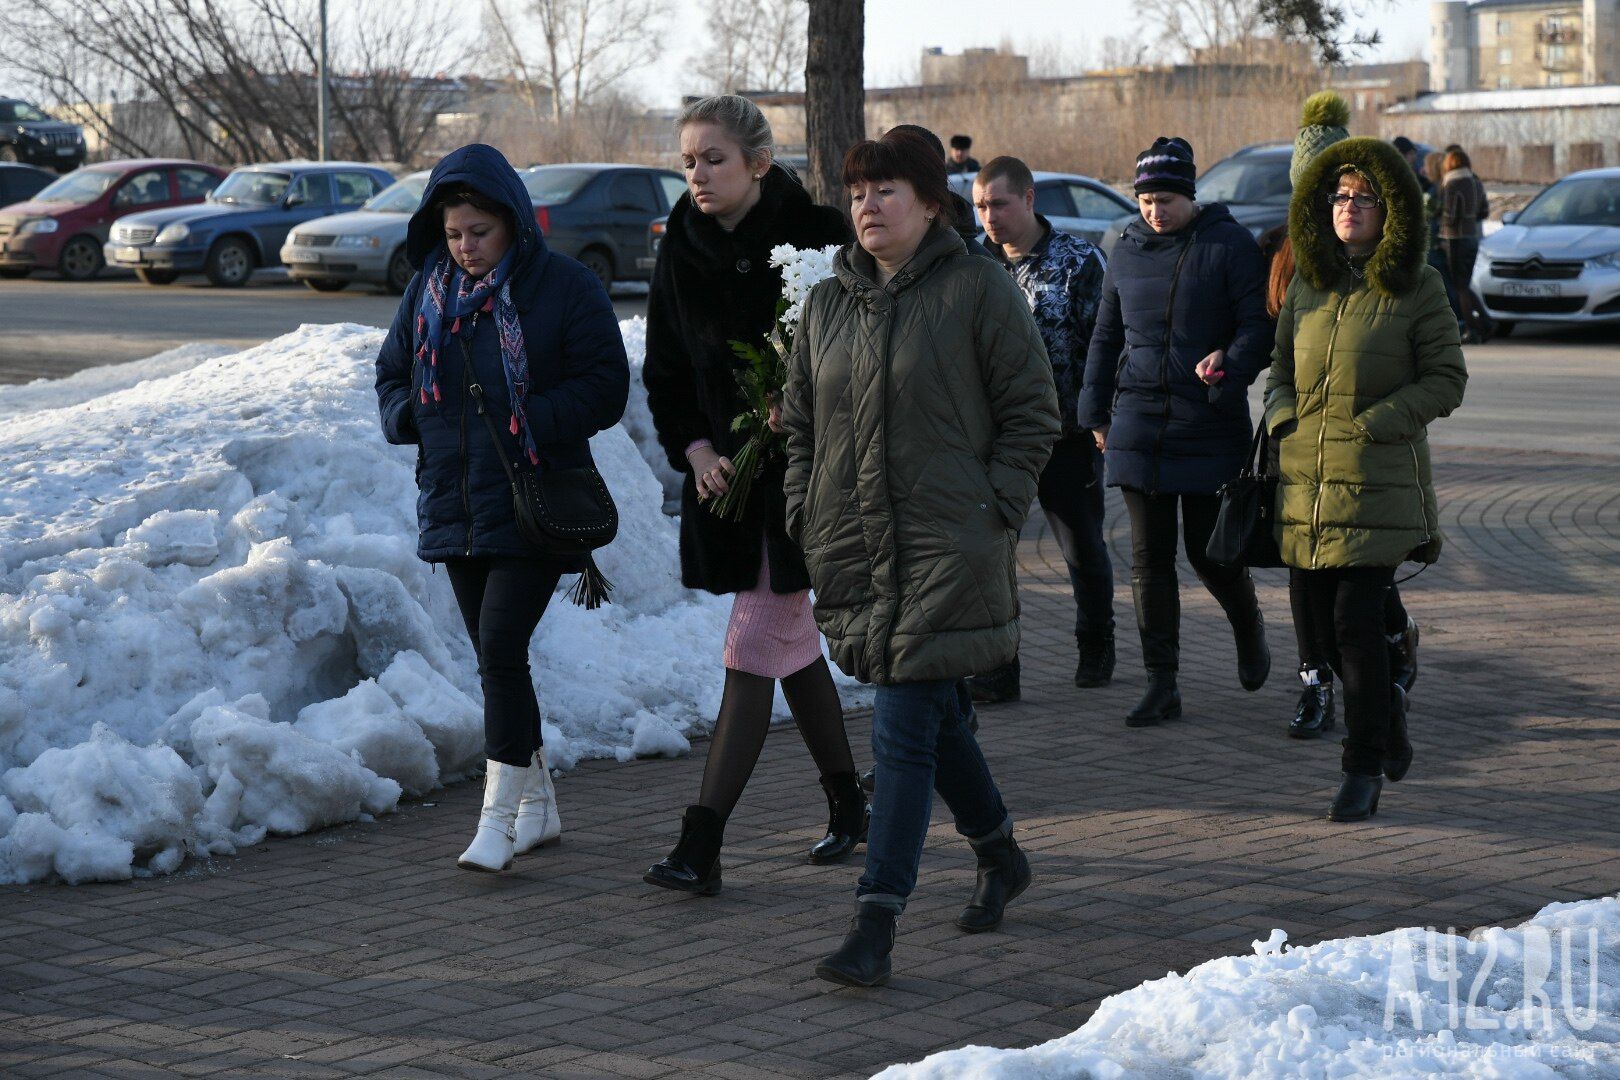  Вся Россия в слезах: в Кемерово похоронили первых жертв пожара